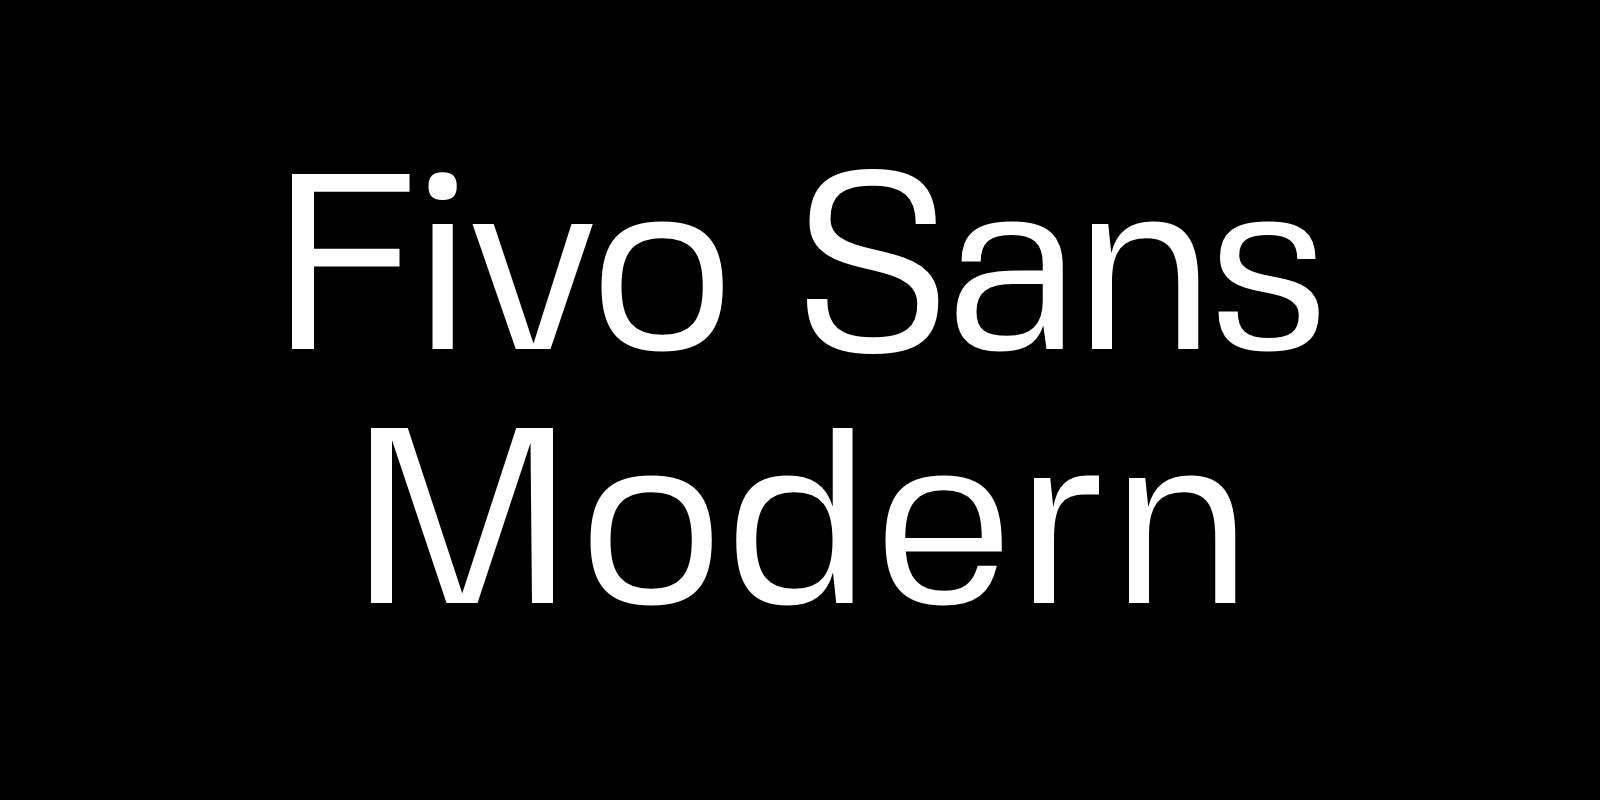 Fivo Sans Modern by Alex Slobzheninov